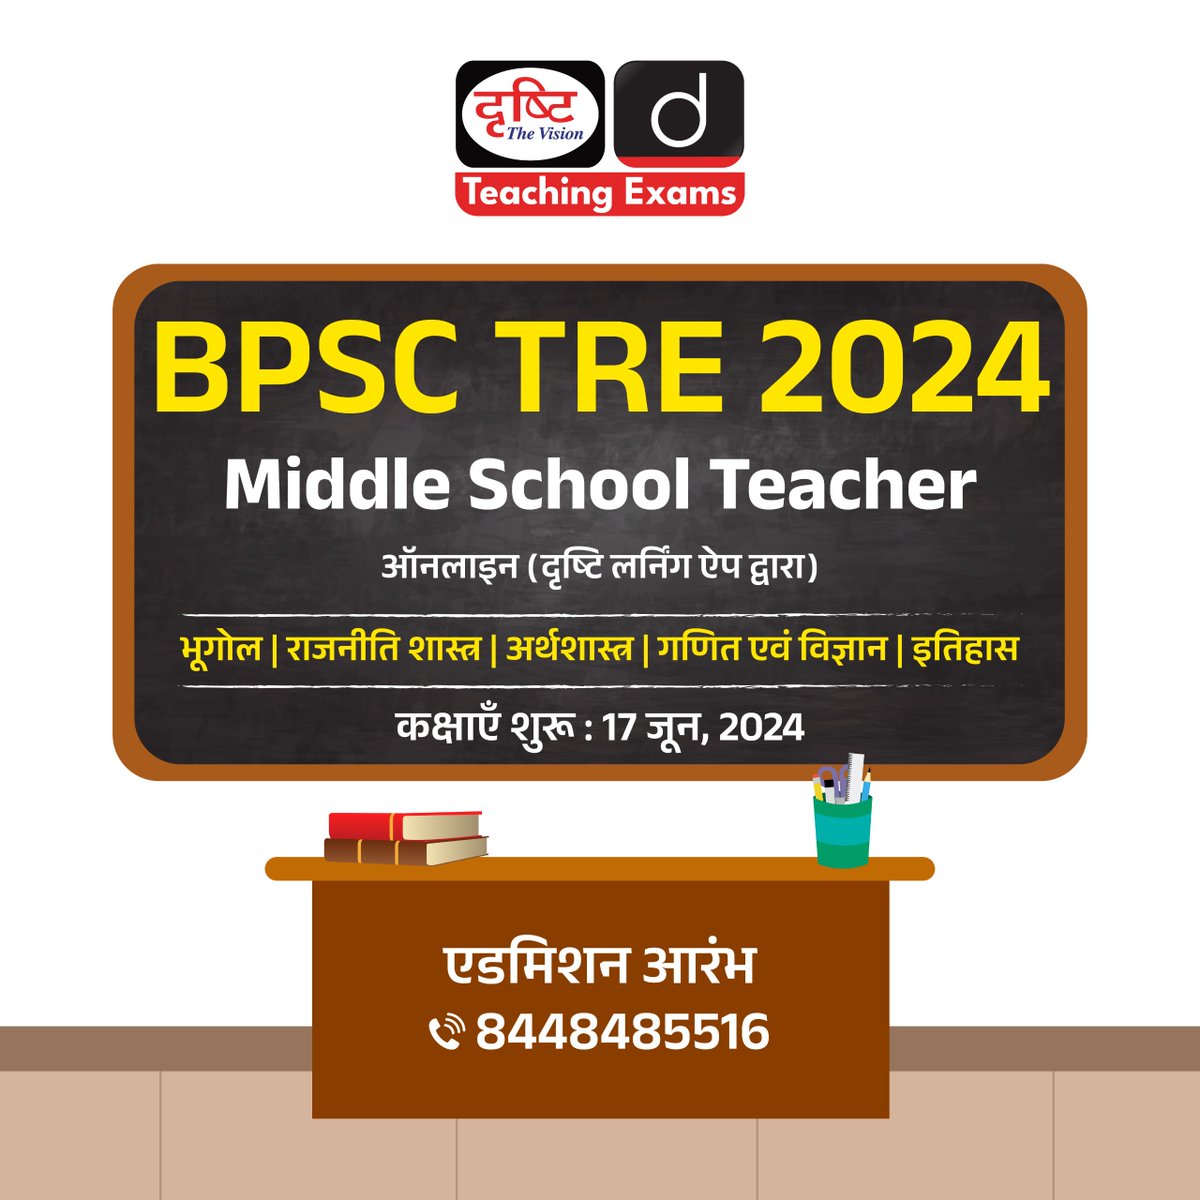 BPSC TRE 2024 कोर्सेज़

Middle School Teacher
.
मोड : ऑनलाइन (दृष्टि लर्निंग ऐप द्वारा)
.
एडमिशन आरम्भ
.
कोर्स में एडमिशन के लिये आप इस लिंक पर क्लिक करें: drishti.xyz/Hindi-Online-C…
.
संपर्क करें: 8448485516
.
#BPSCTRE #BPSC #TRE #MiddleSchoolTeacher #PoliticalScience #History